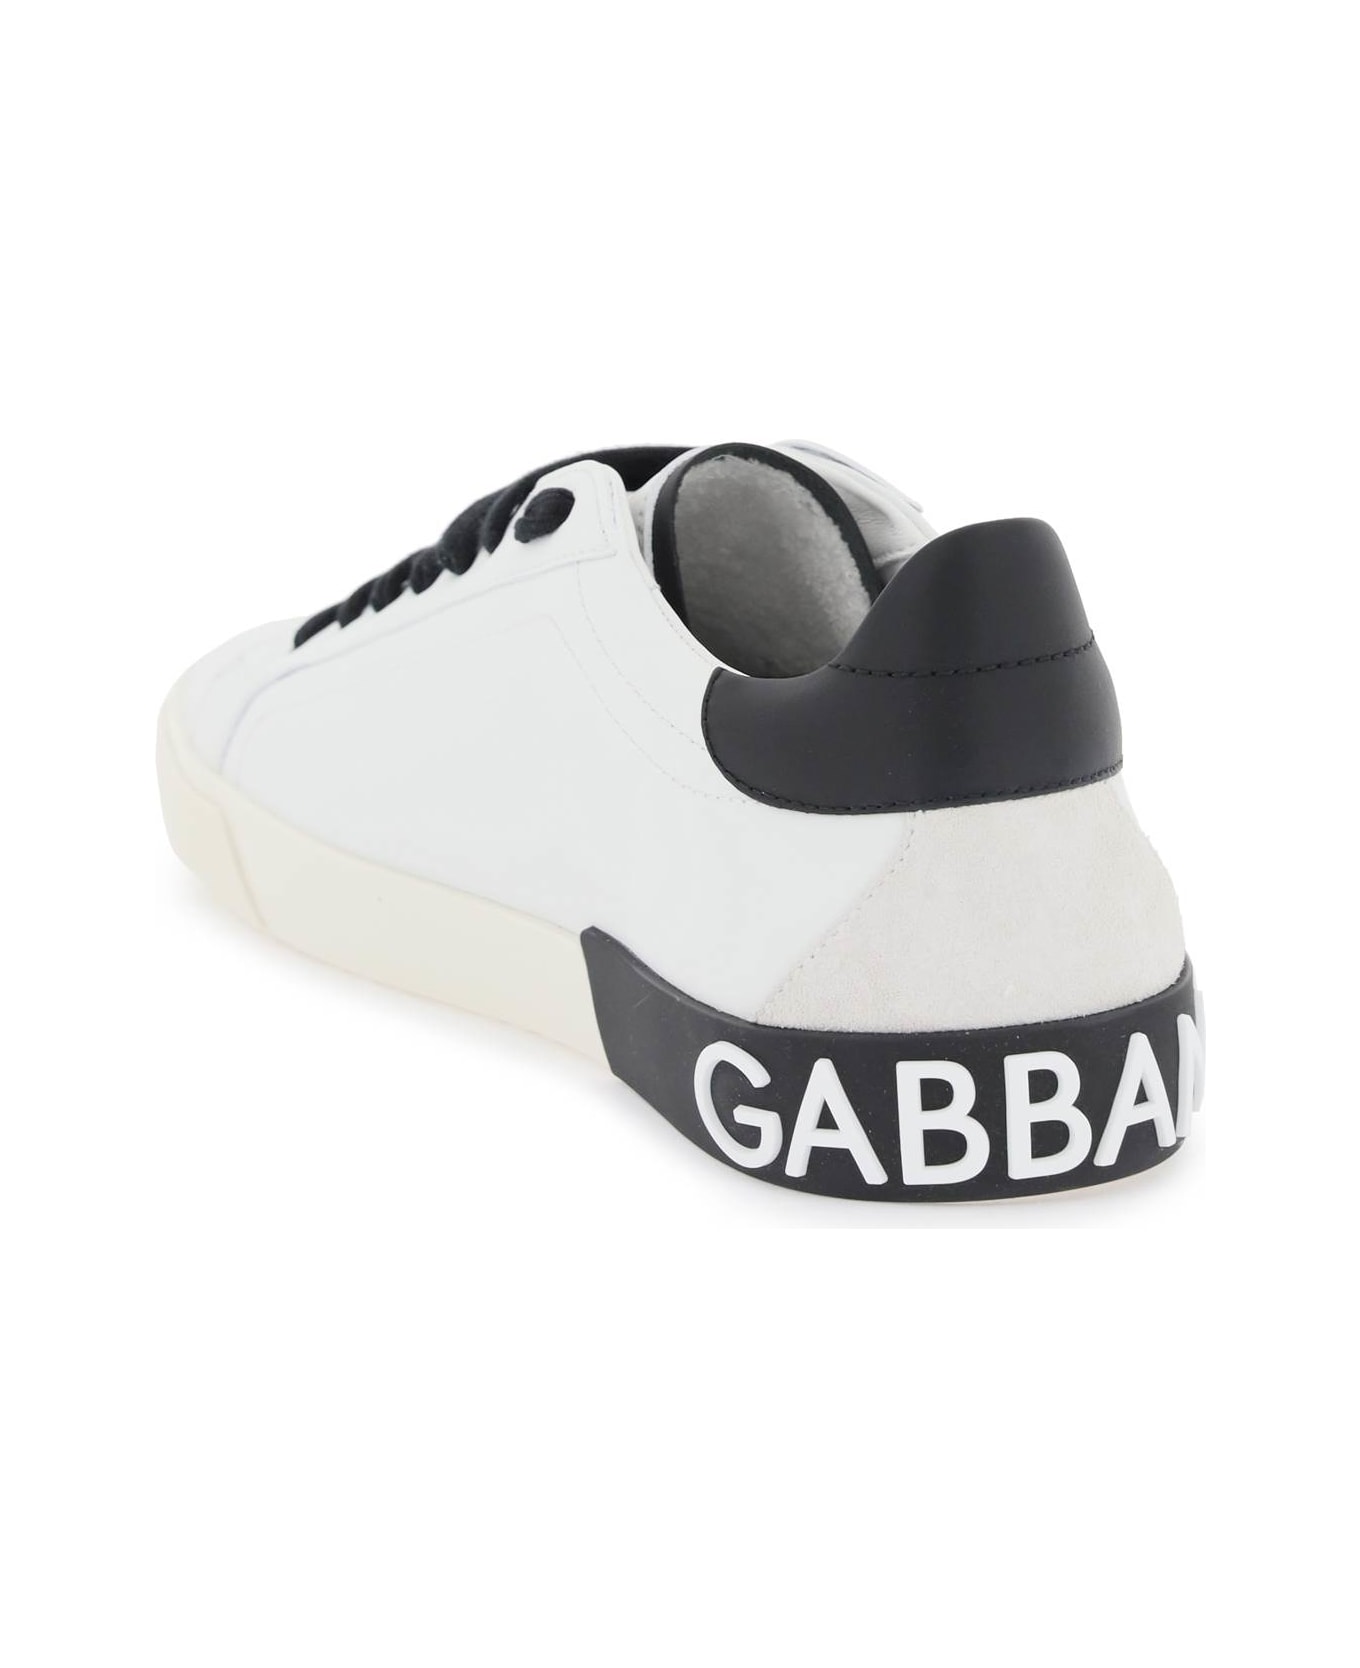 Dolce & Gabbana Portofino Nappa Leather Sneakers - WHITE/BLACK